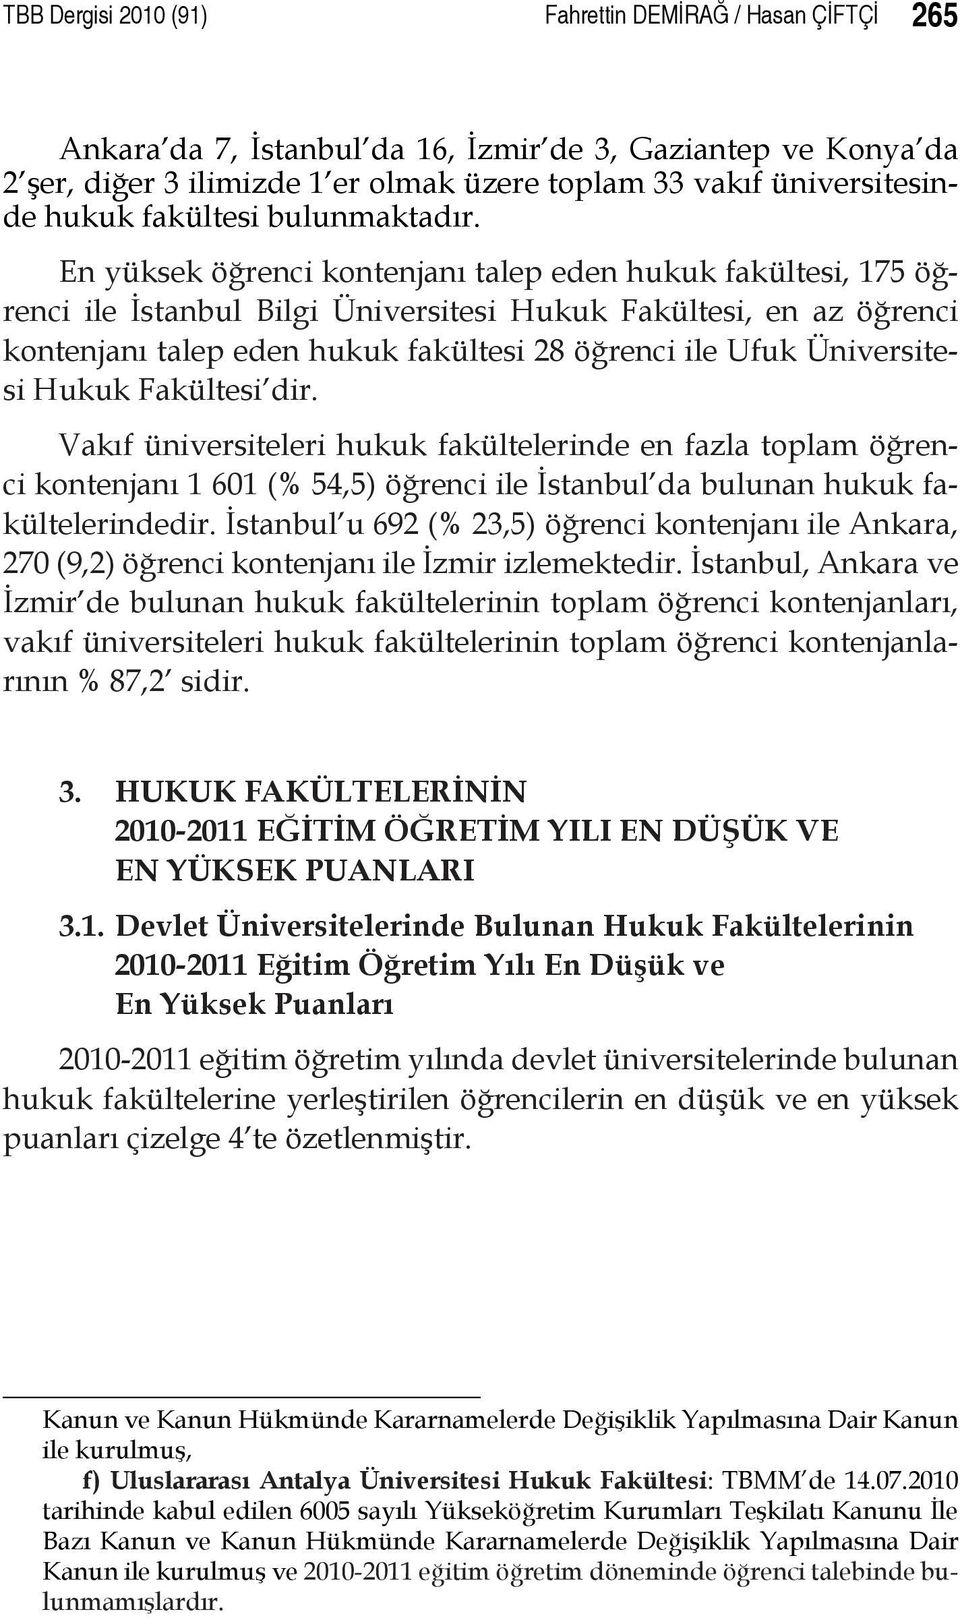 En yüksek öğrenci kontenjanı talep eden hukuk fakültesi, 175 öğrenci ile İstanbul Bilgi Üniversitesi Hukuk Fakültesi, en az öğrenci kontenjanı talep eden hukuk fakültesi 28 öğrenci ile Ufuk